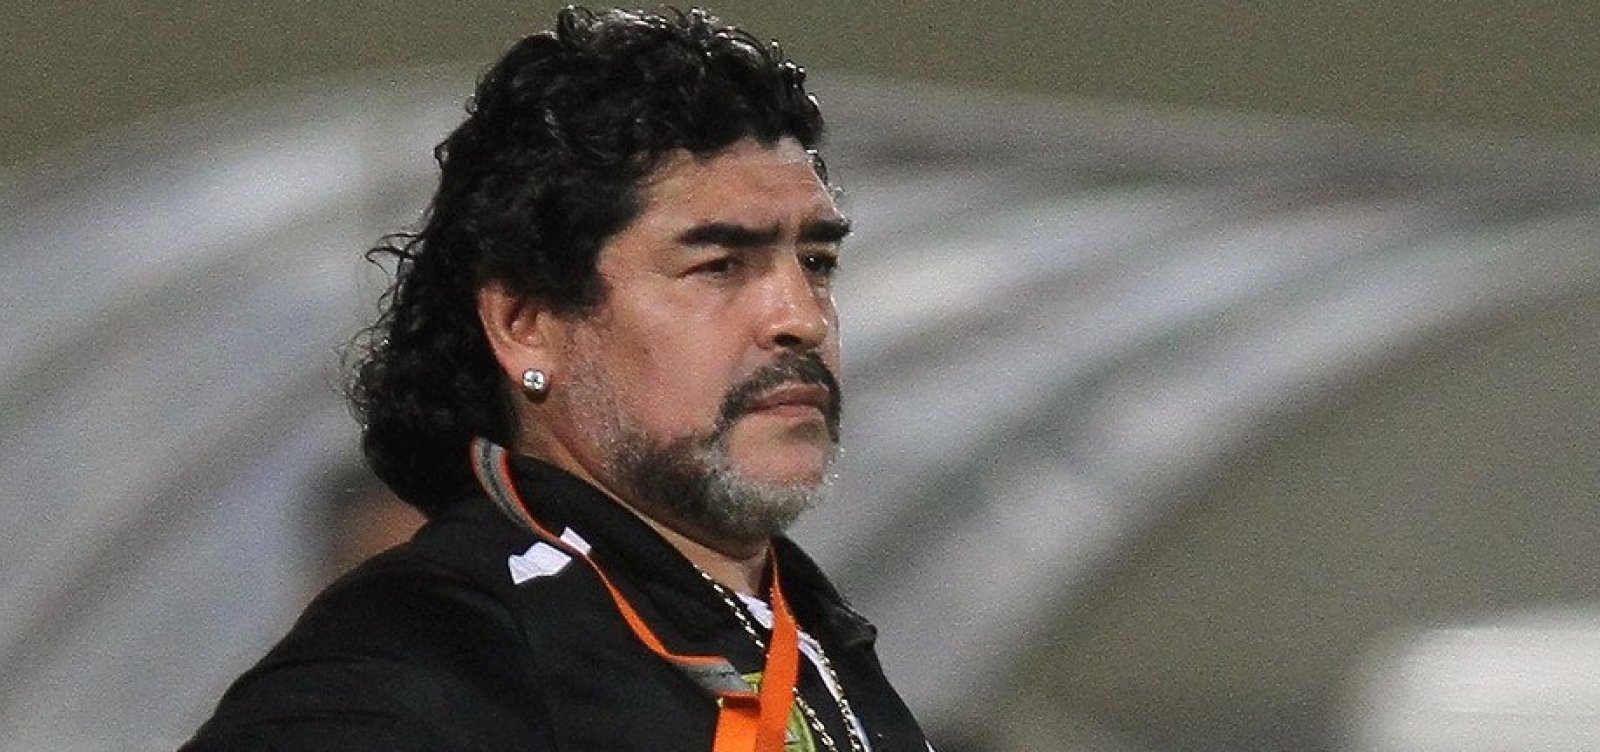 Velório de Maradona será na Casa Rosada, sede do governo argentino  